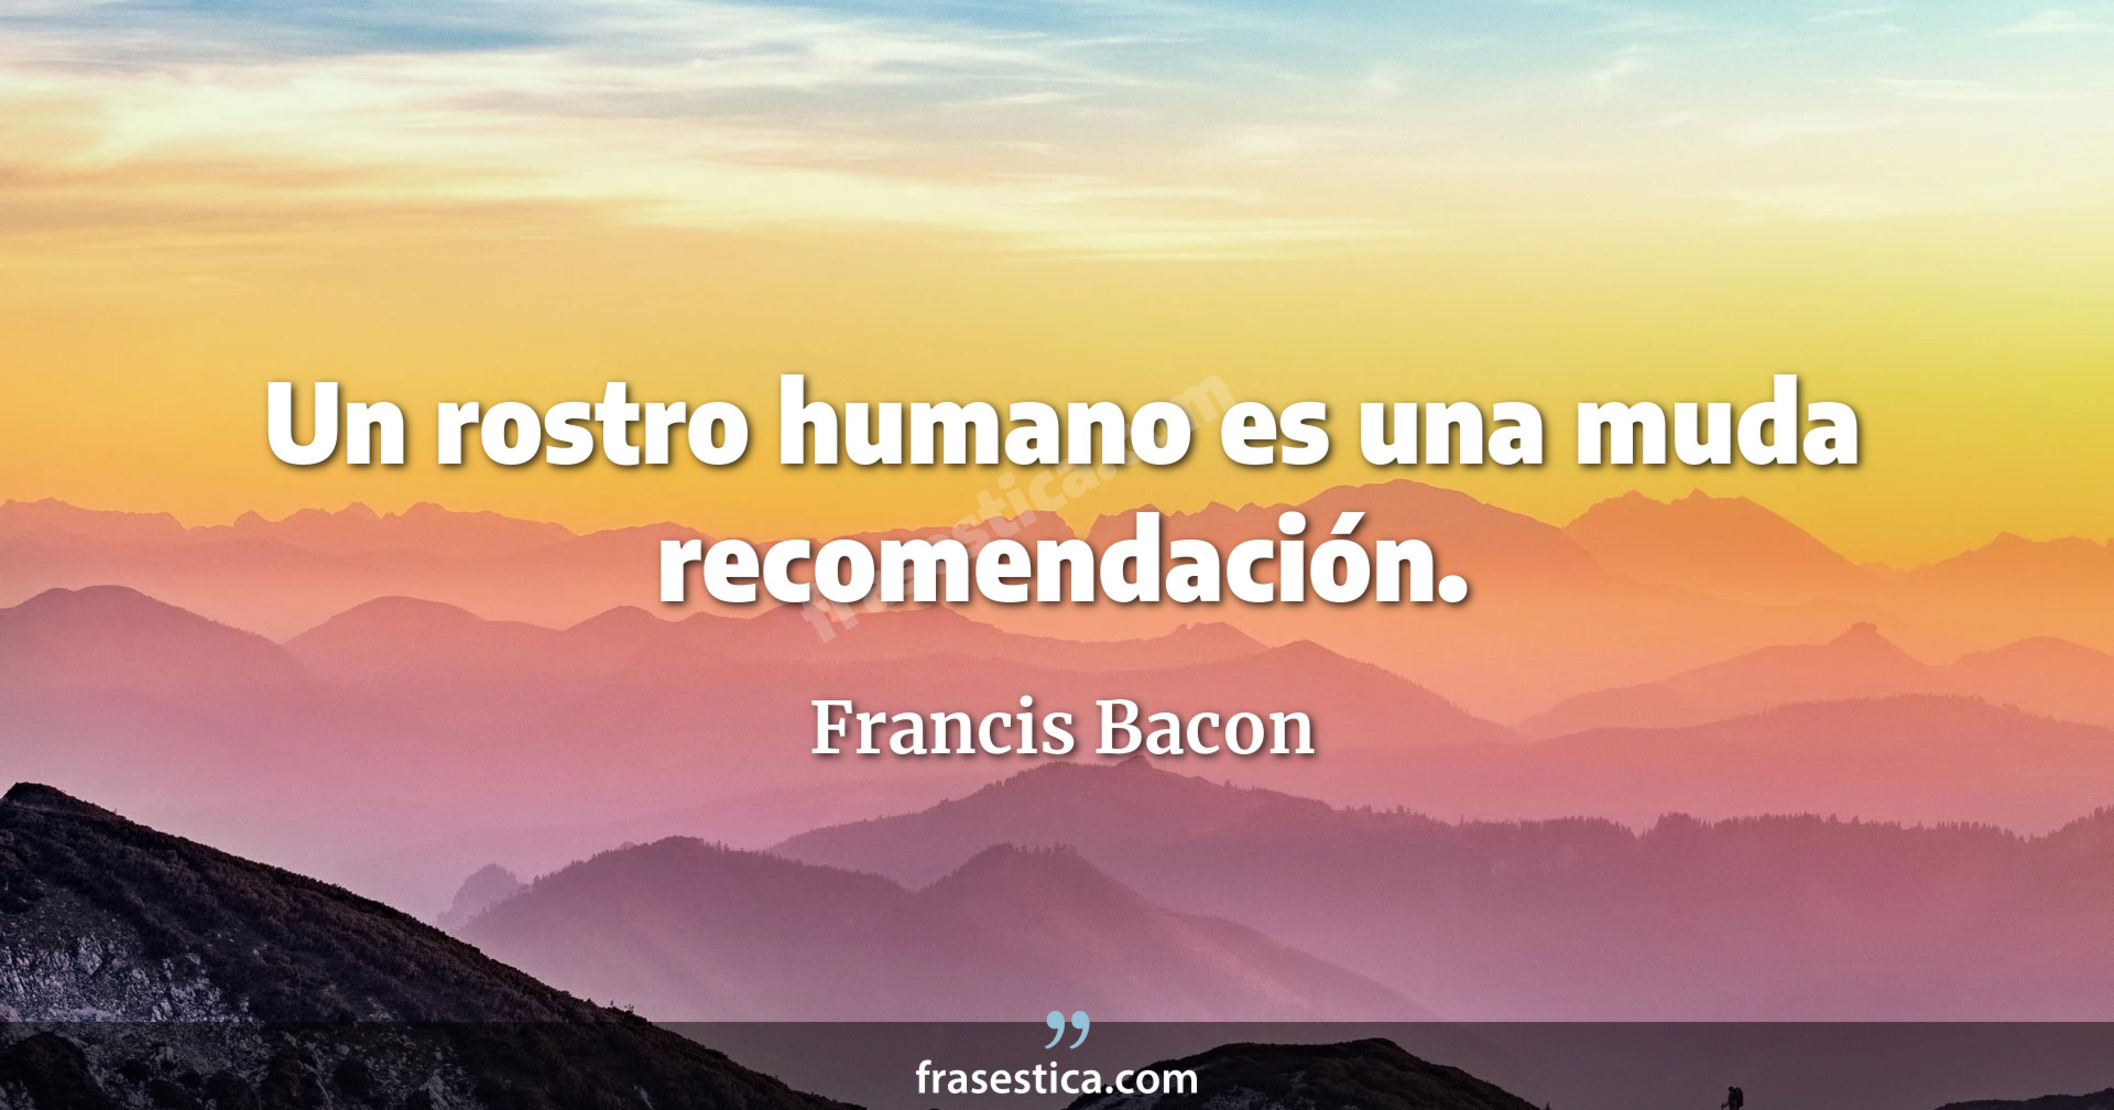 Un rostro humano es una muda recomendación. - Francis Bacon